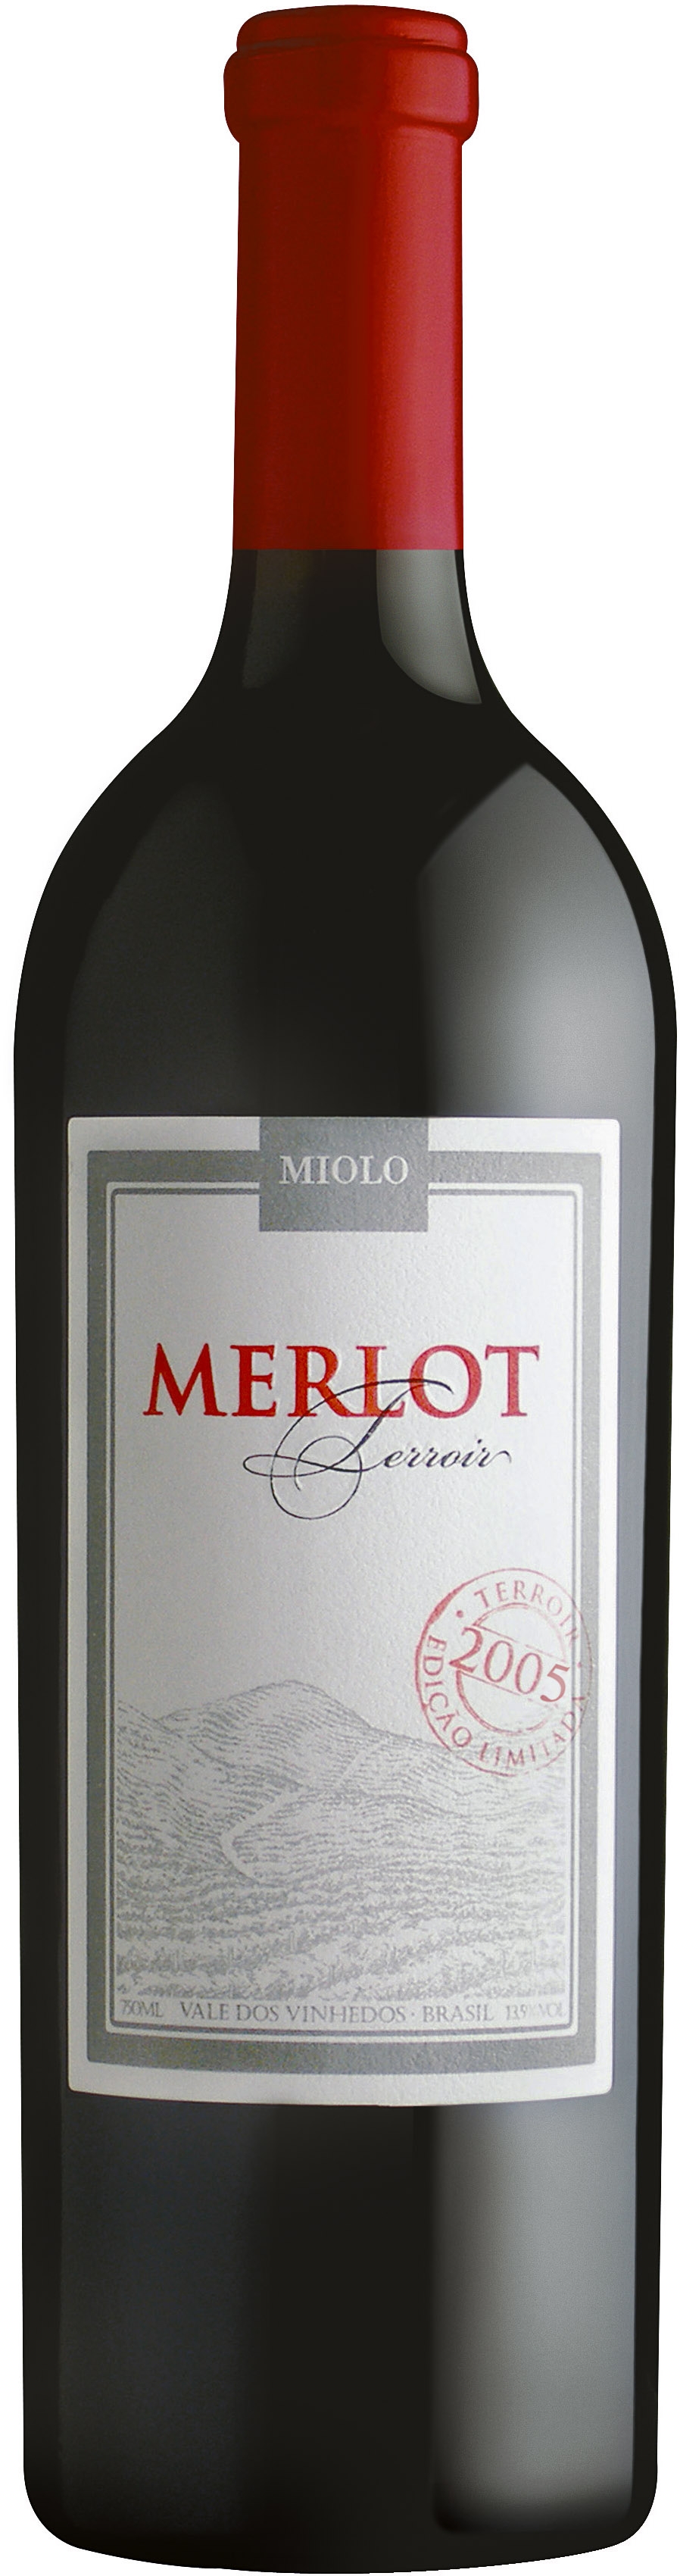 Merlot Terroir Wine